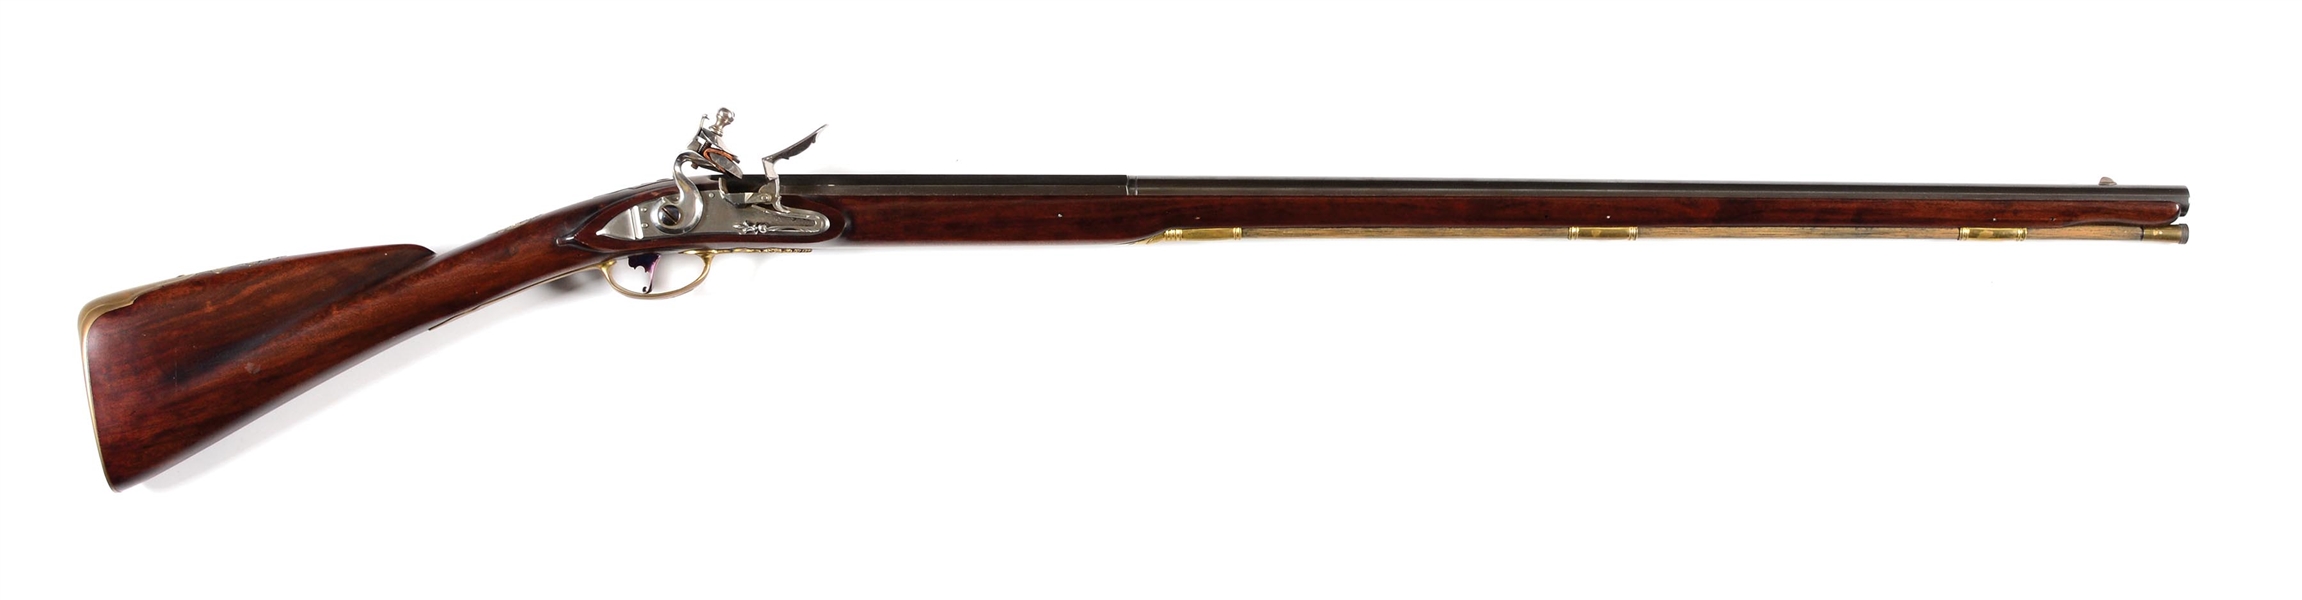 (A) CAYWOOD FLINTLOCK SMOOTHBORE TRADE GUN.